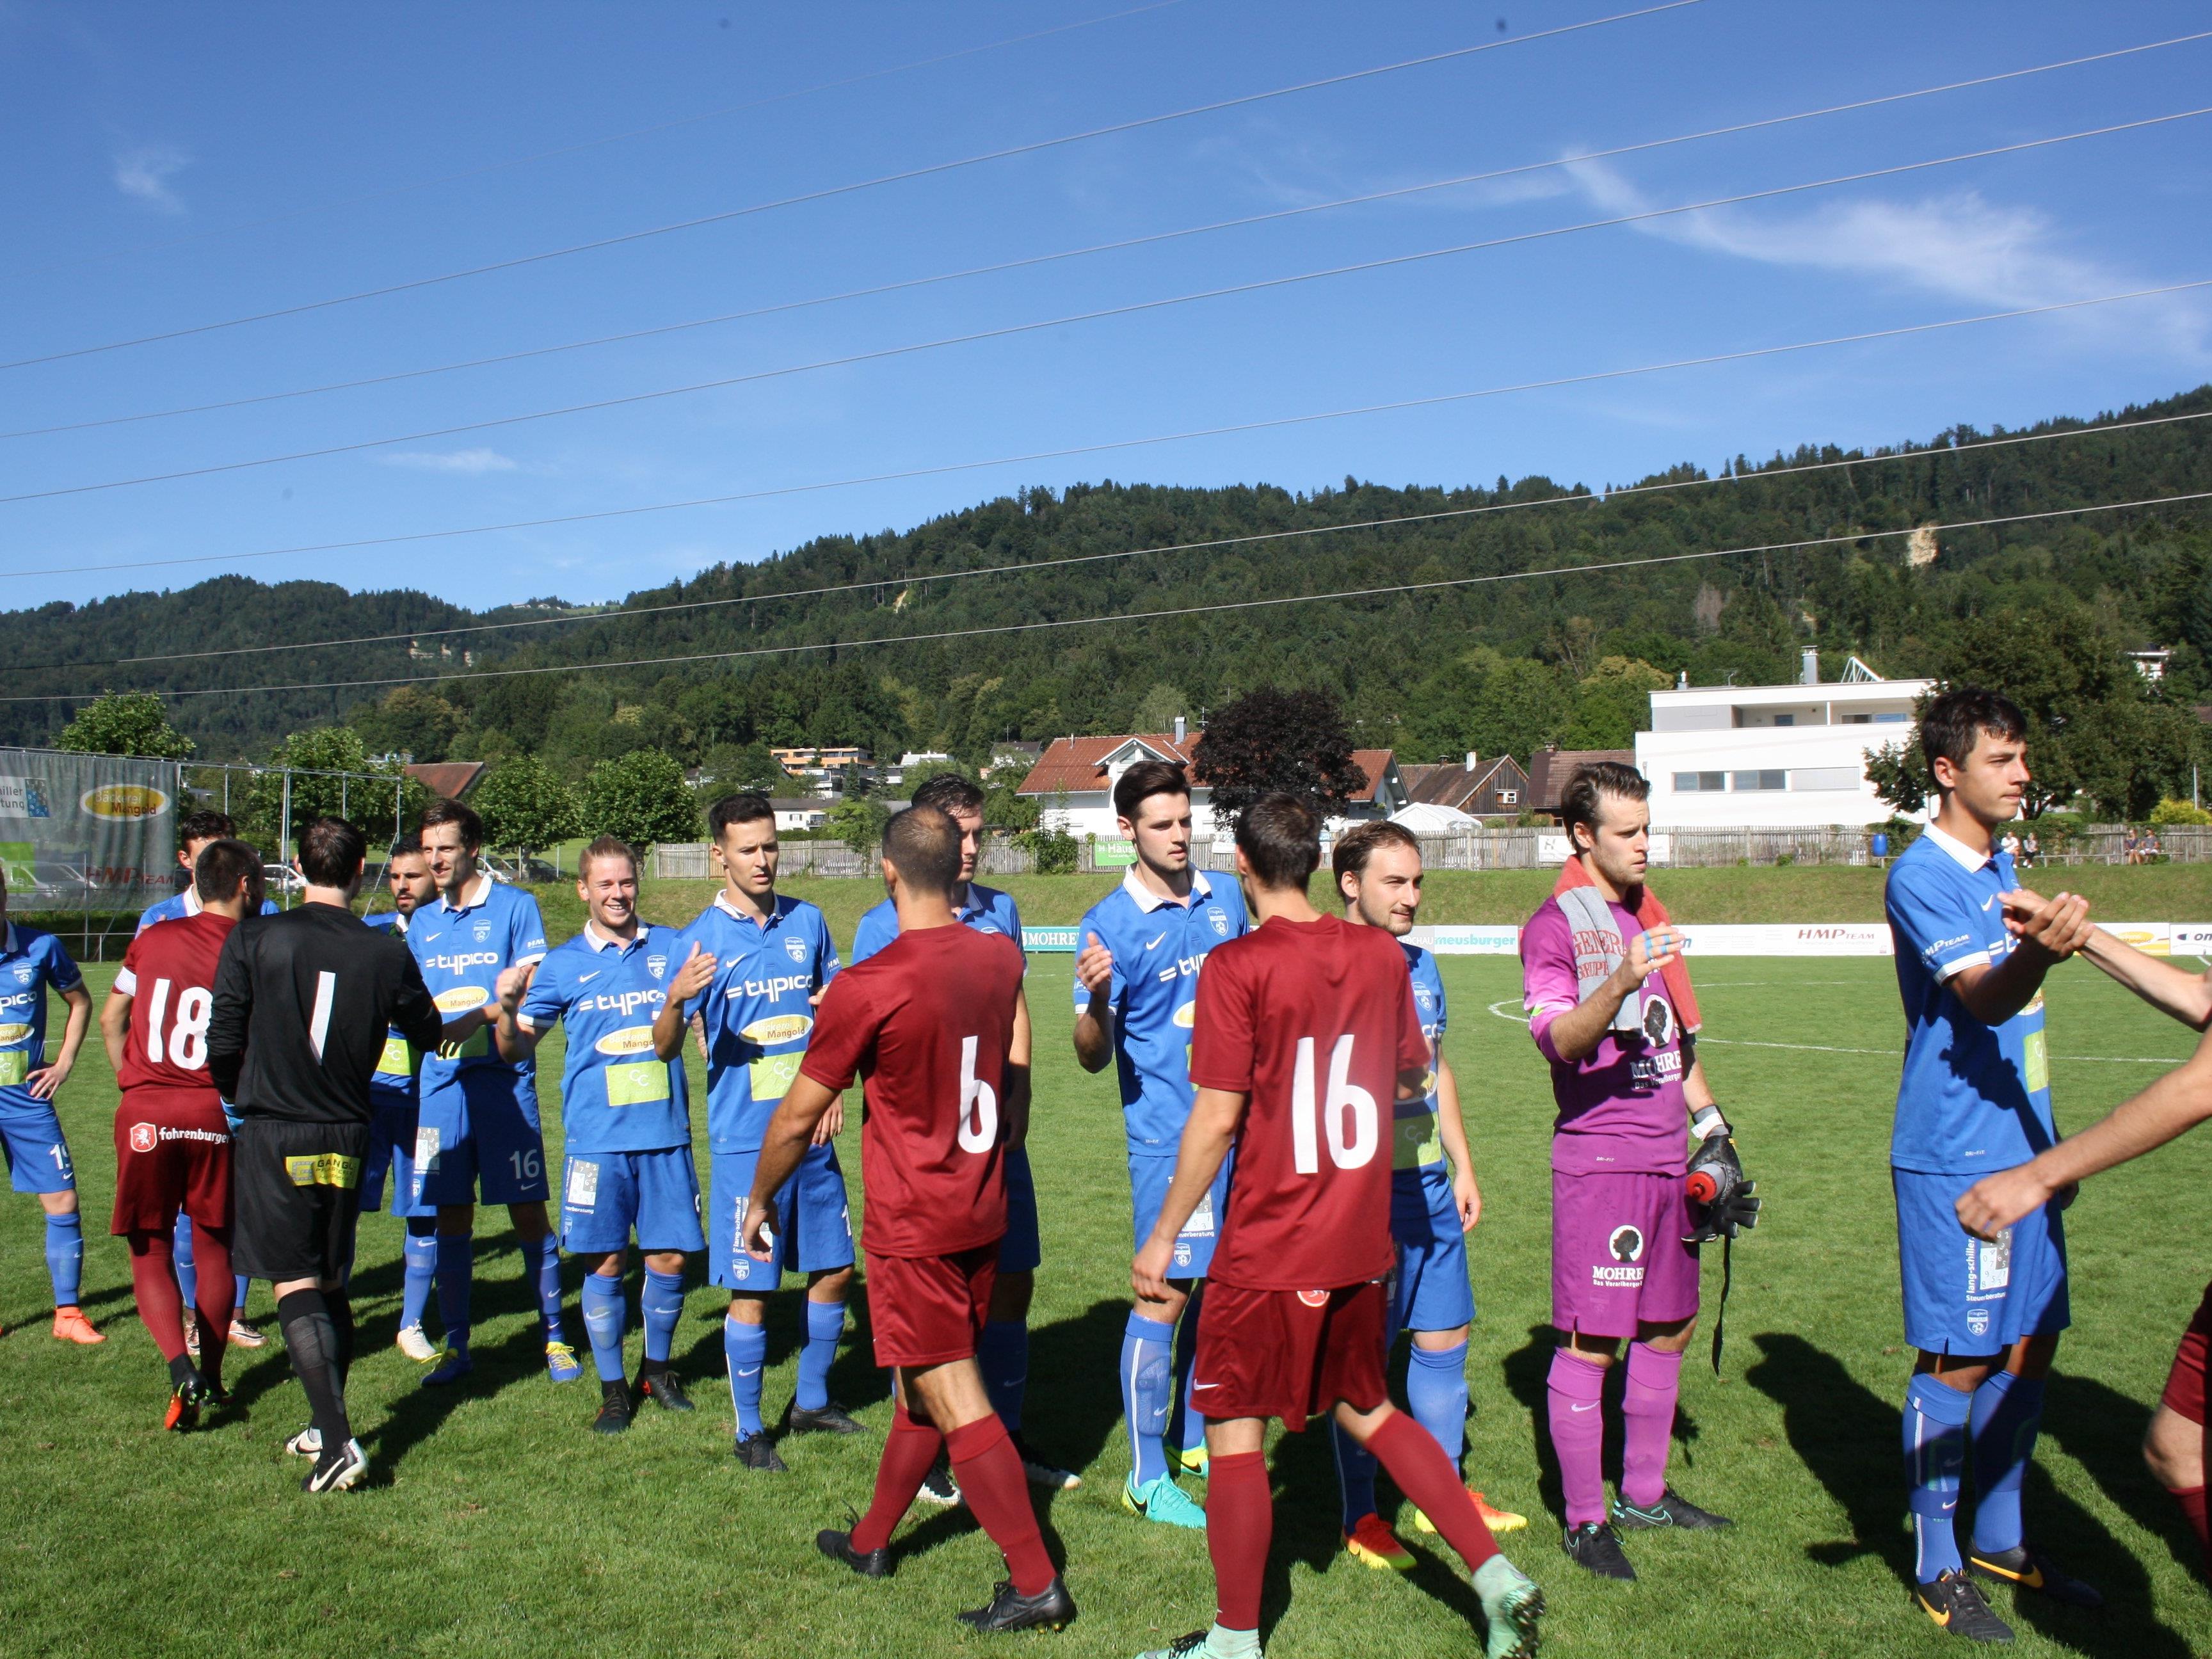 Am Samstag empfängt der SV Typico Lochau im Heimspiel das Team aus Brederis. Spielbeginn ist um 17 Uhr.